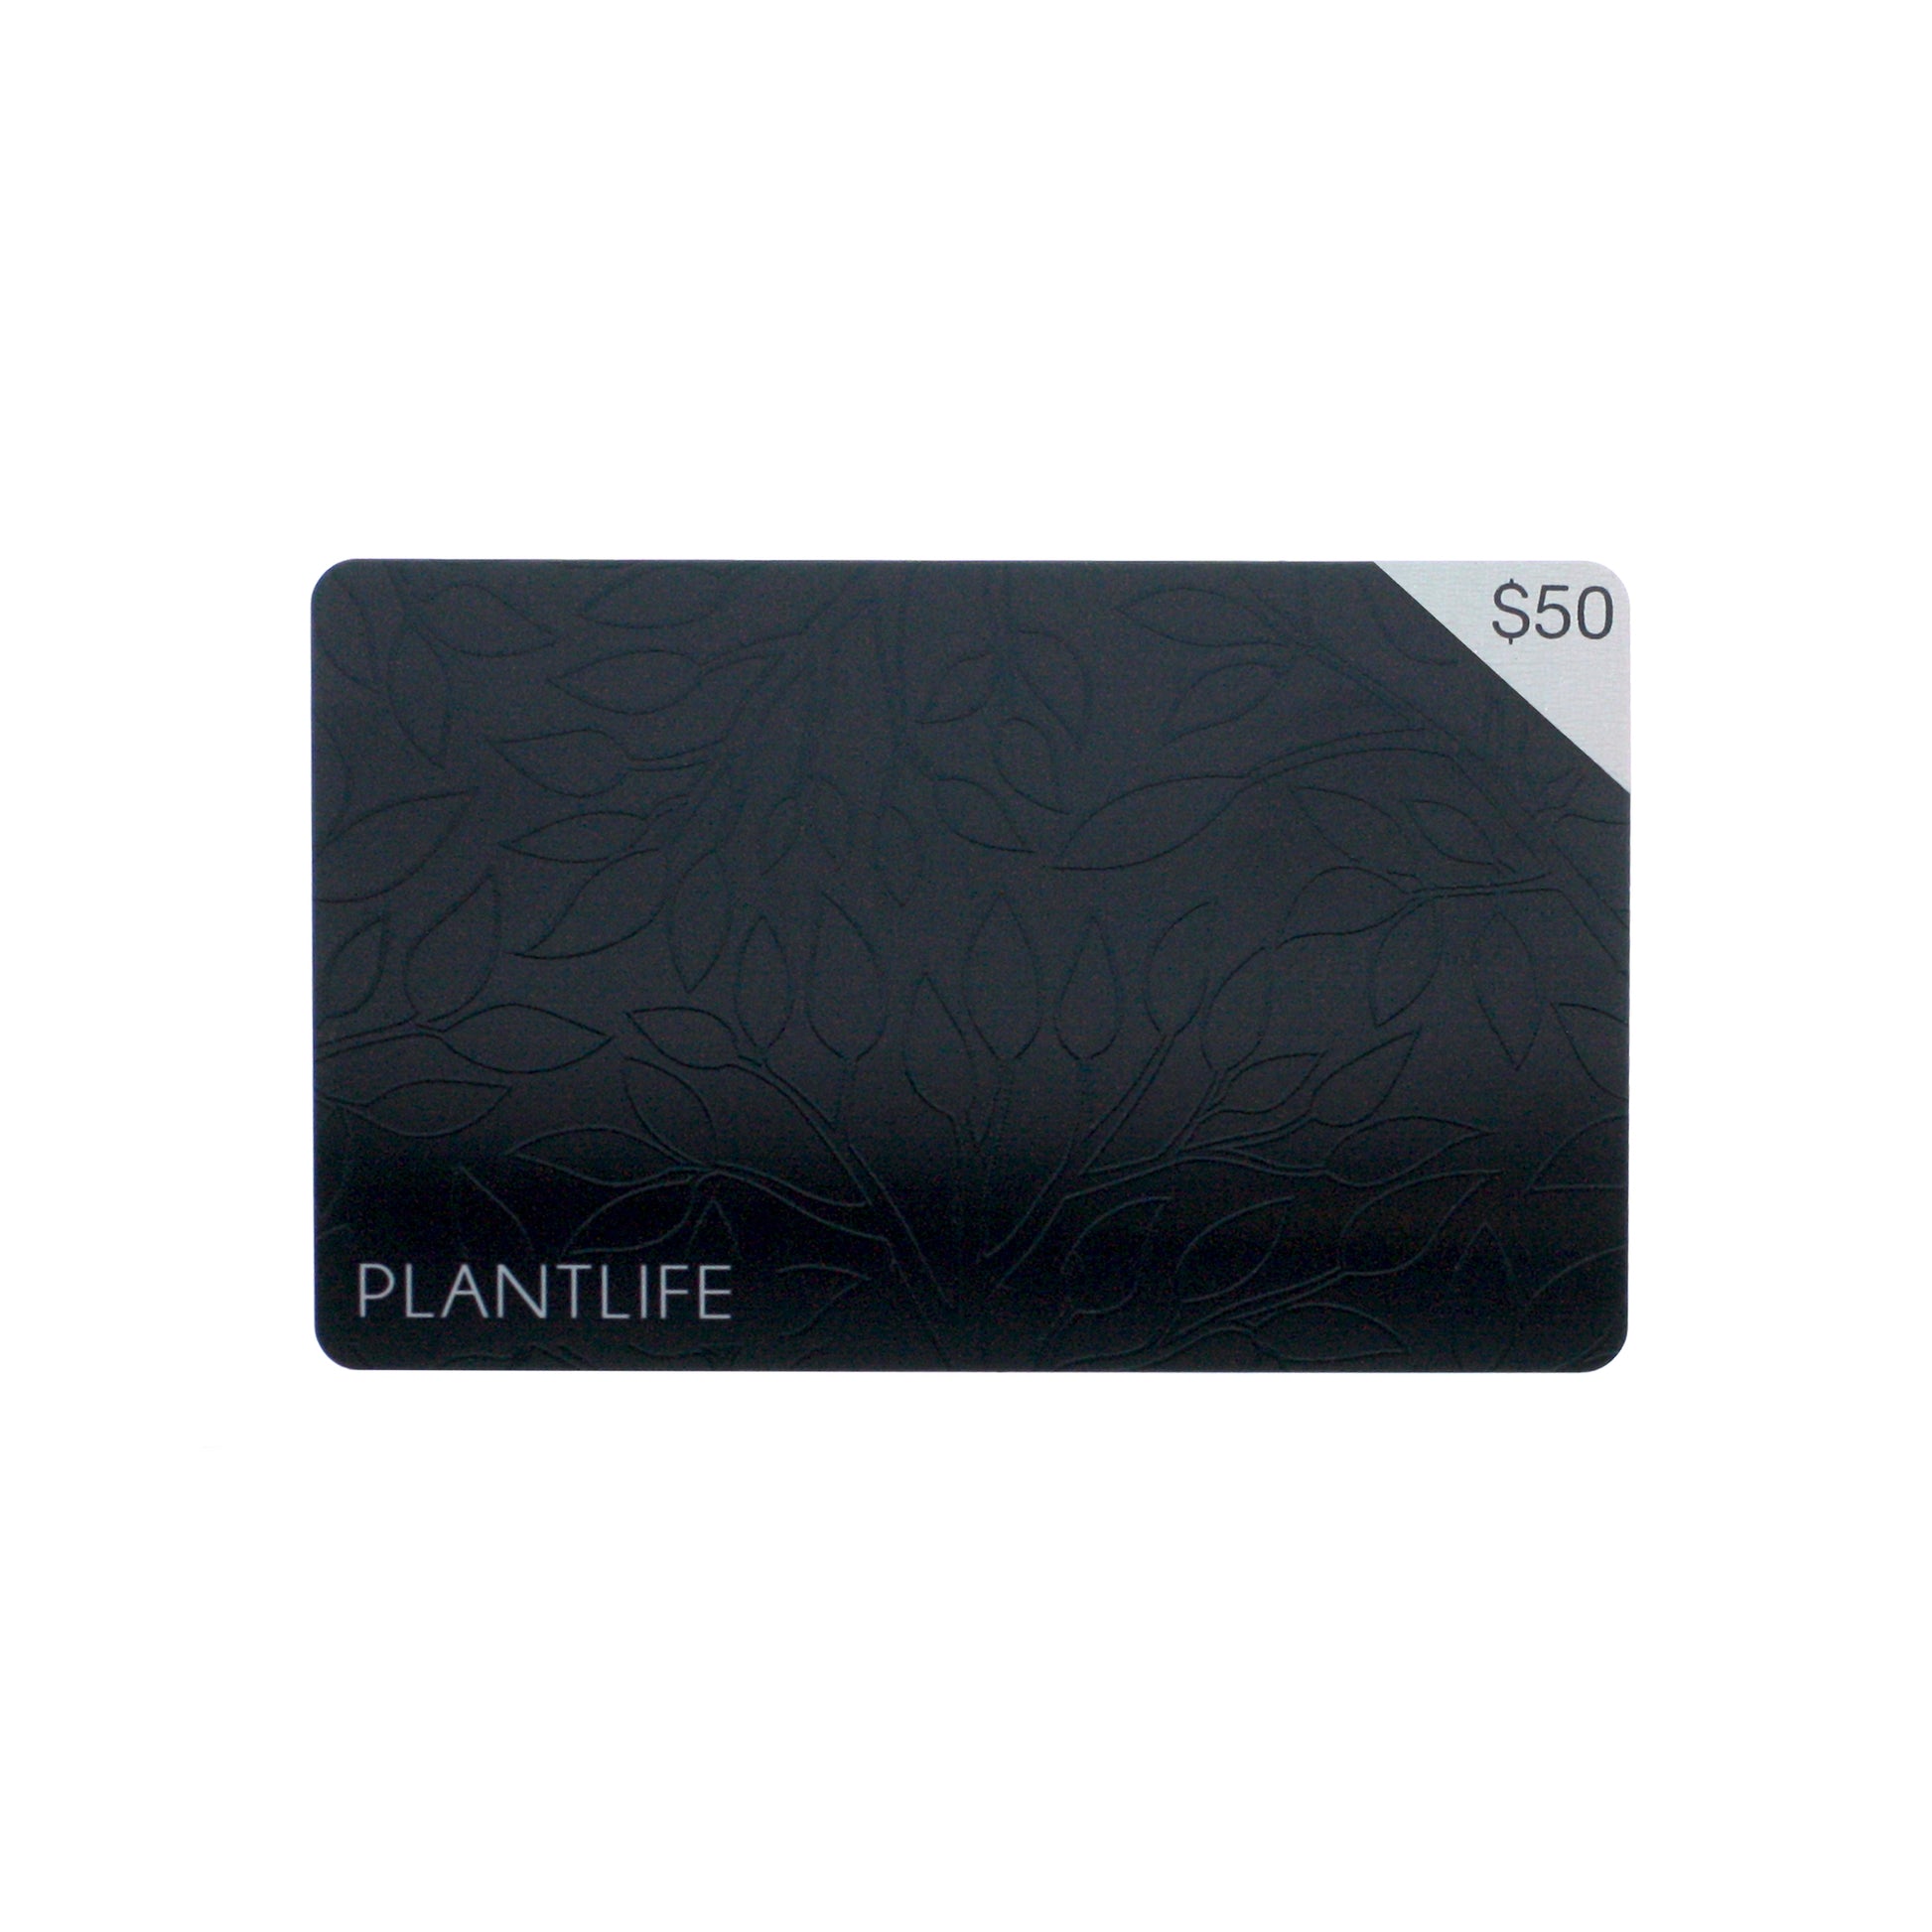 Plantlife Gift Card $50